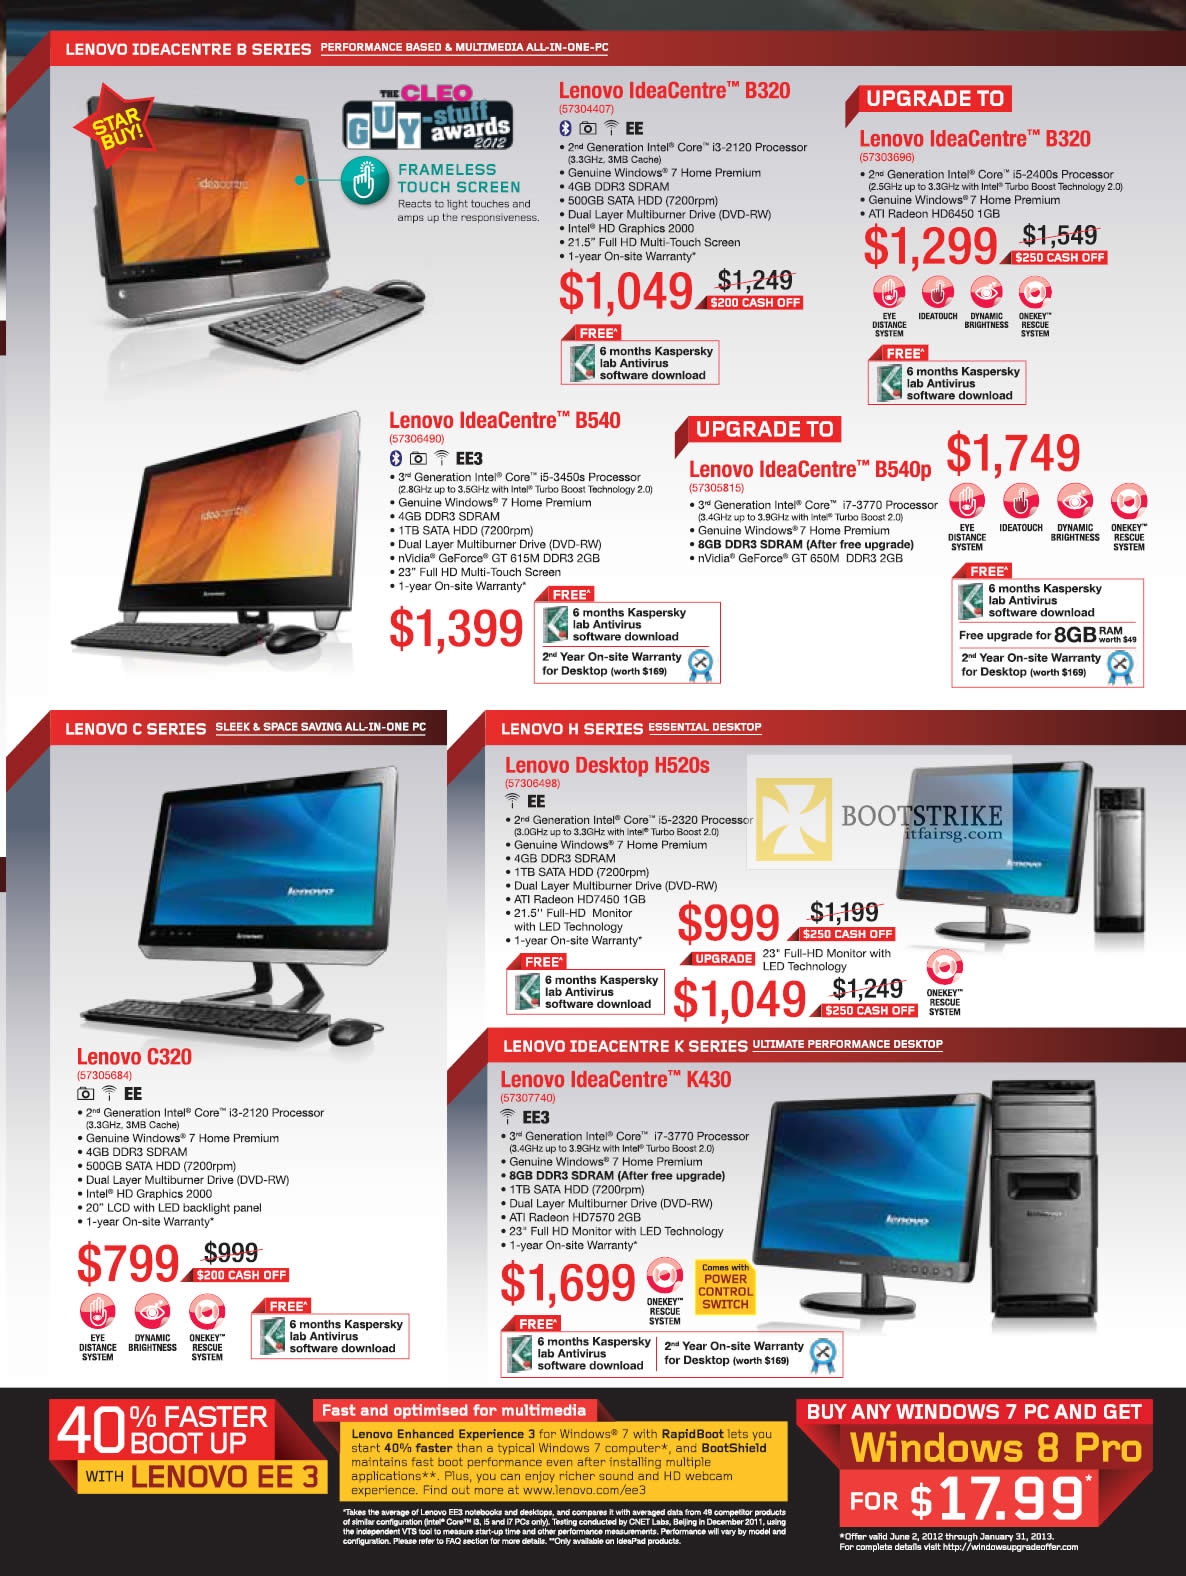 COMEX 2012 price list image brochure of Lenovo AIO Desktop PCs IdeaCentre B320, B540, B540p, C320, H520s, K430